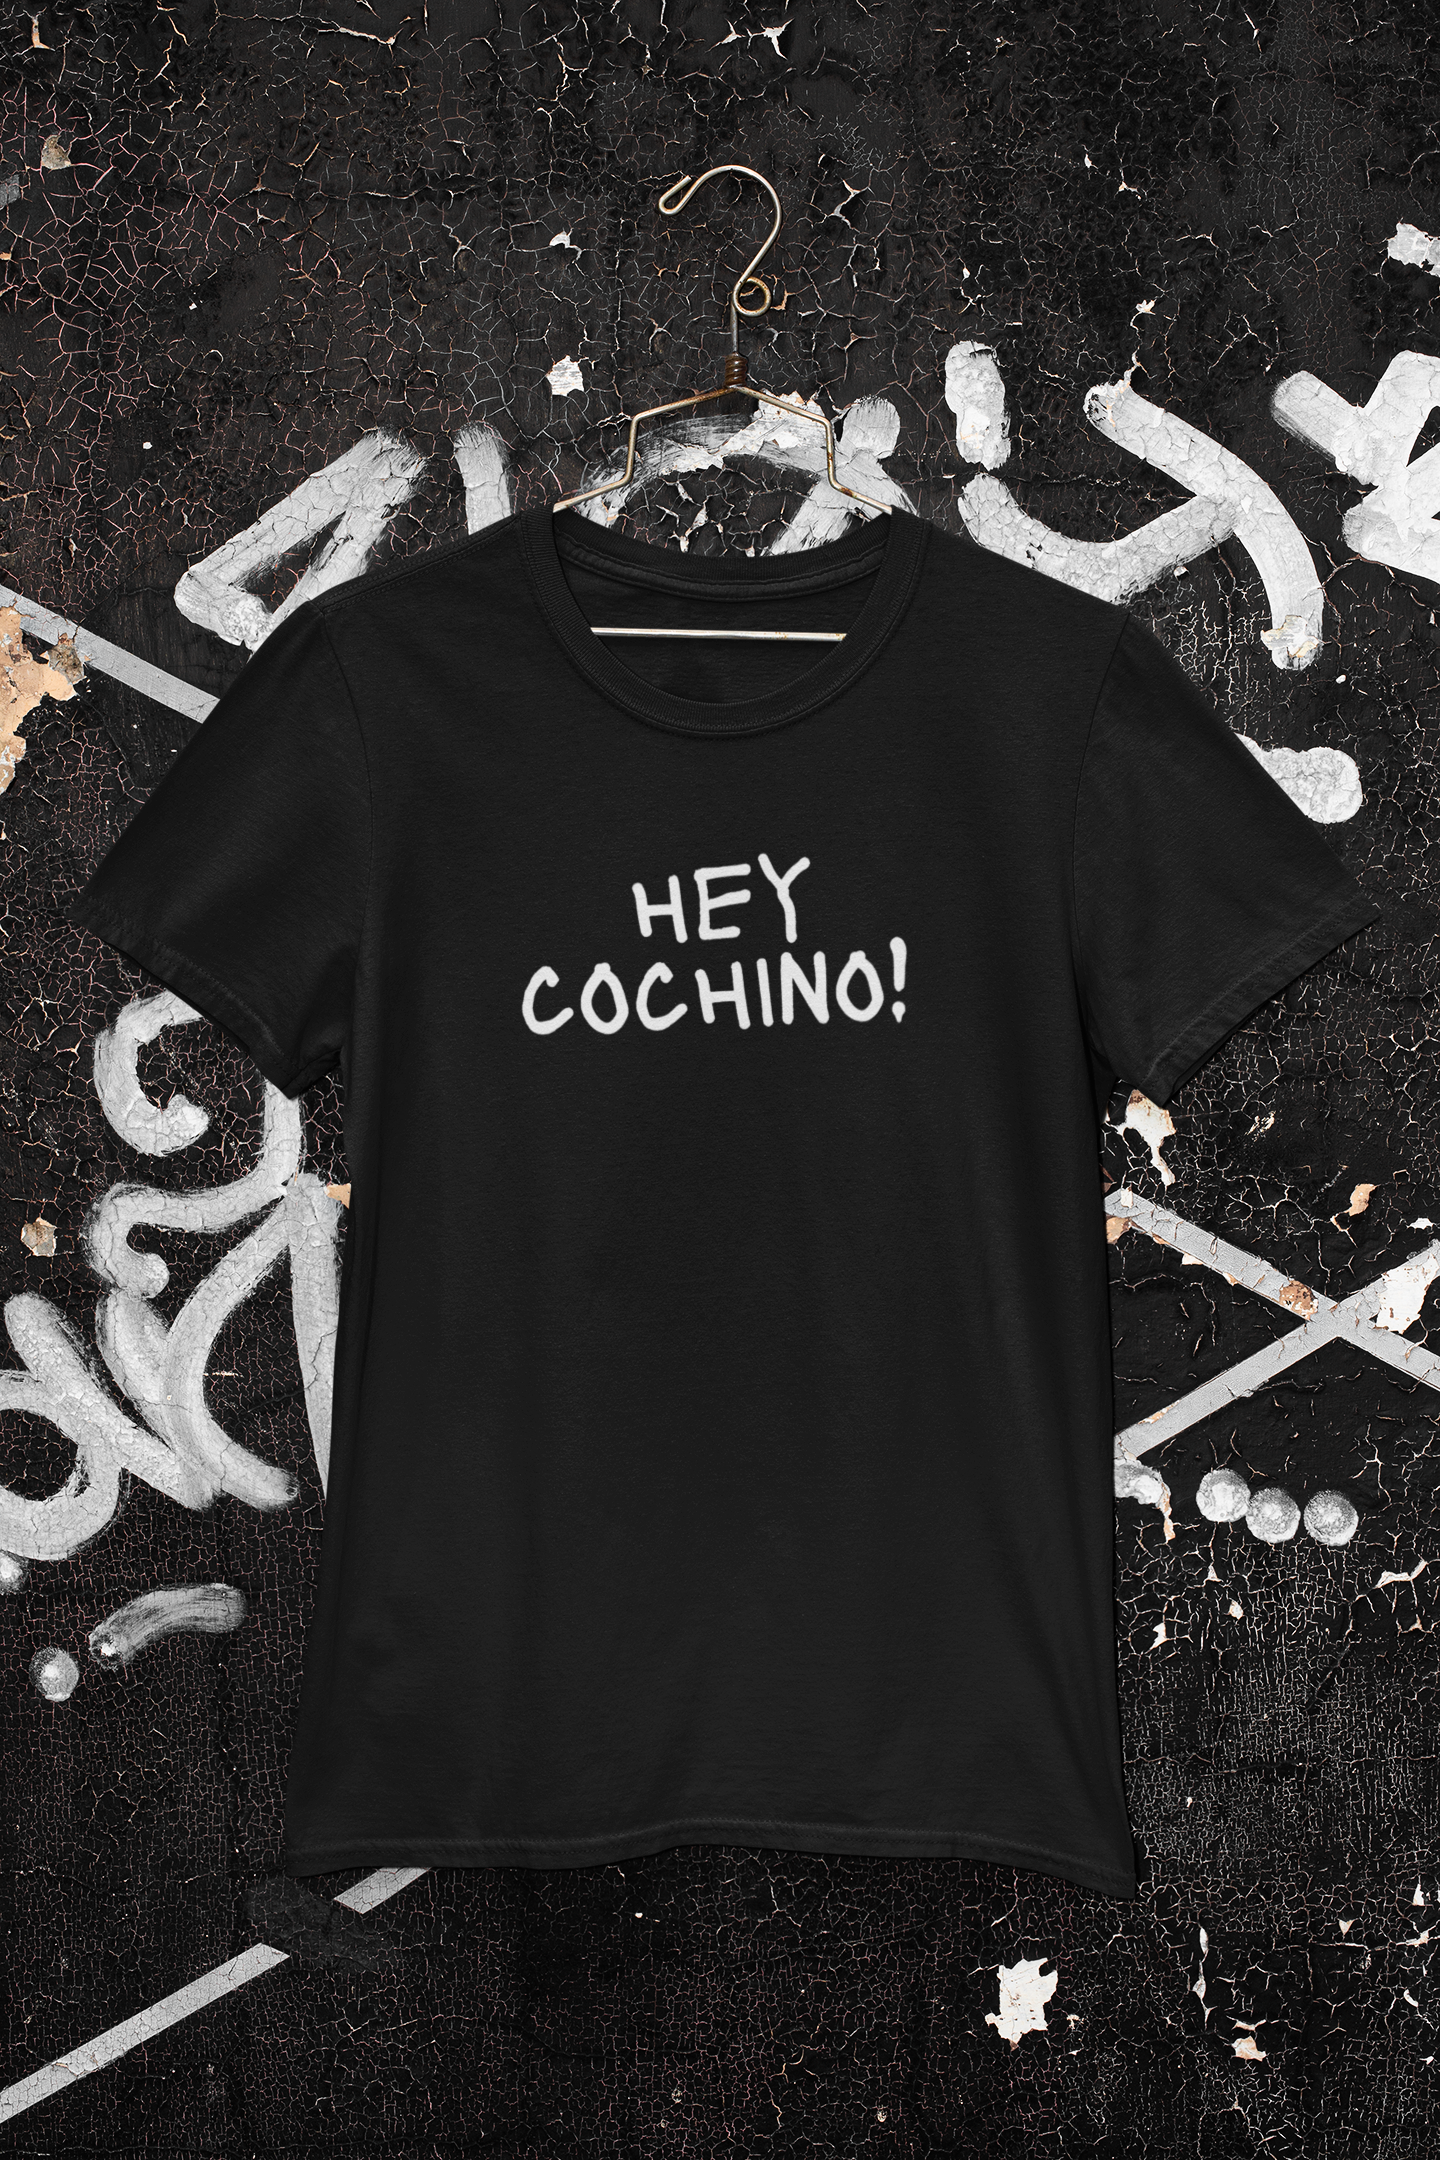 1 Hey Cochino - Hilarious Obnoxious Men's Shirt!